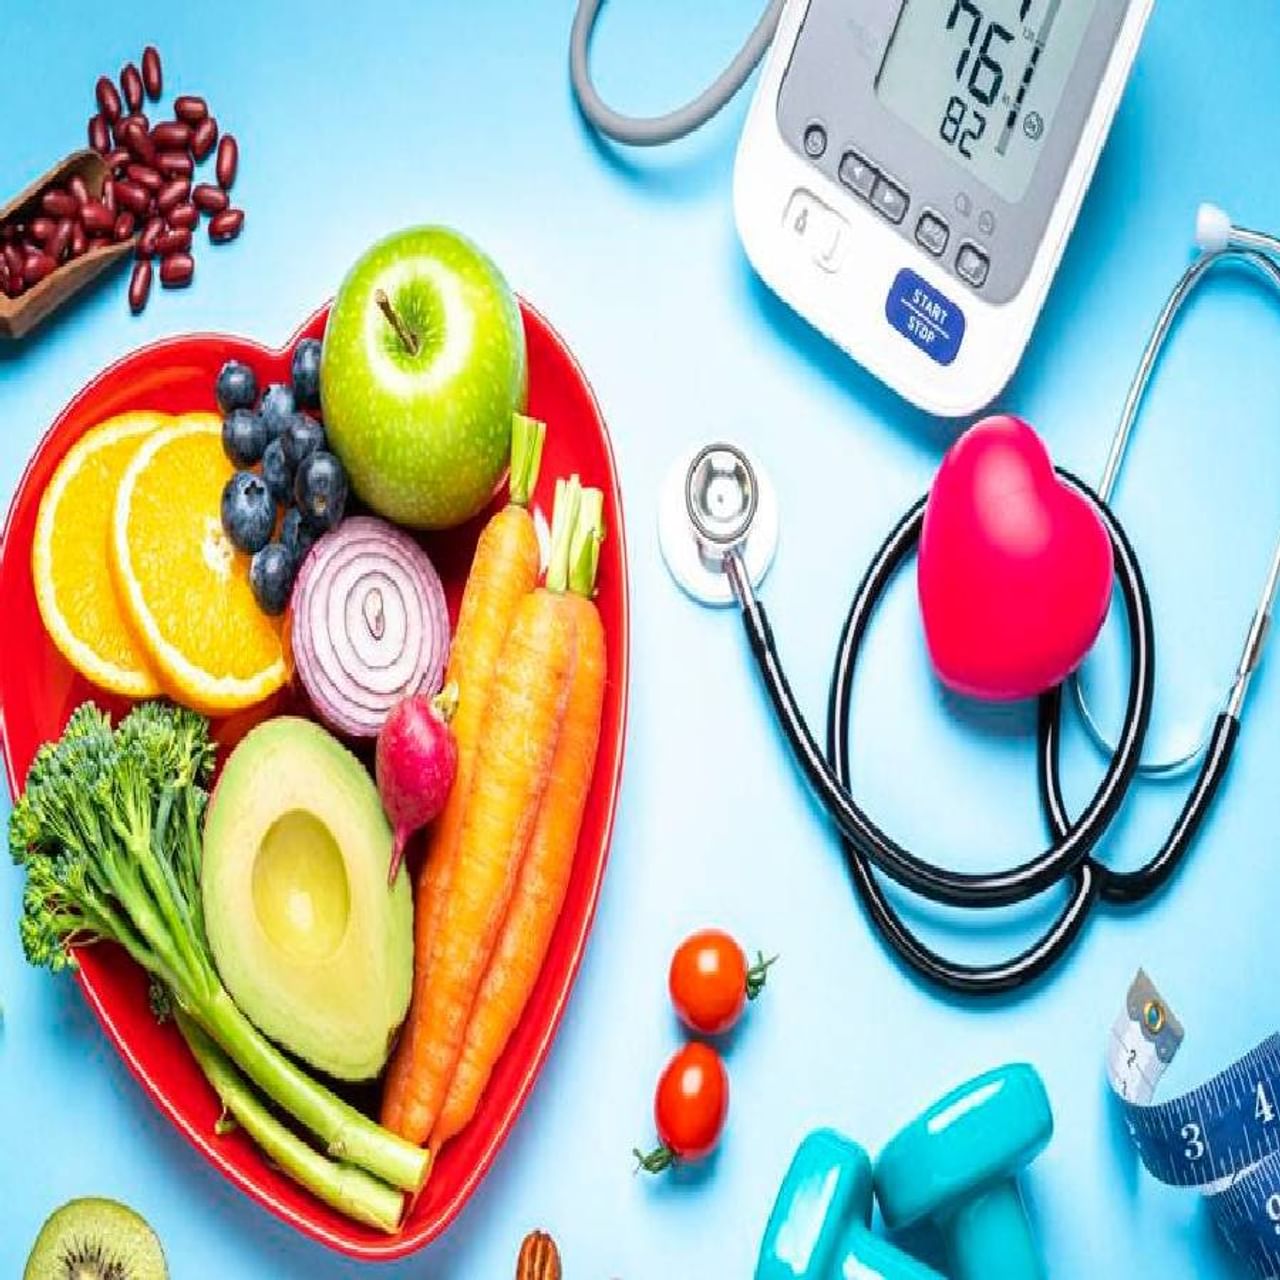 उच्च रक्तदाबाची समस्या सुरू झाल्यावर आरोग्याची विशेष काळजी घ्यावी लागते. विशेष: यादरम्यान आपण काय खातो आणि काय पितो हे सर्वात महत्वाचे ठरते. 